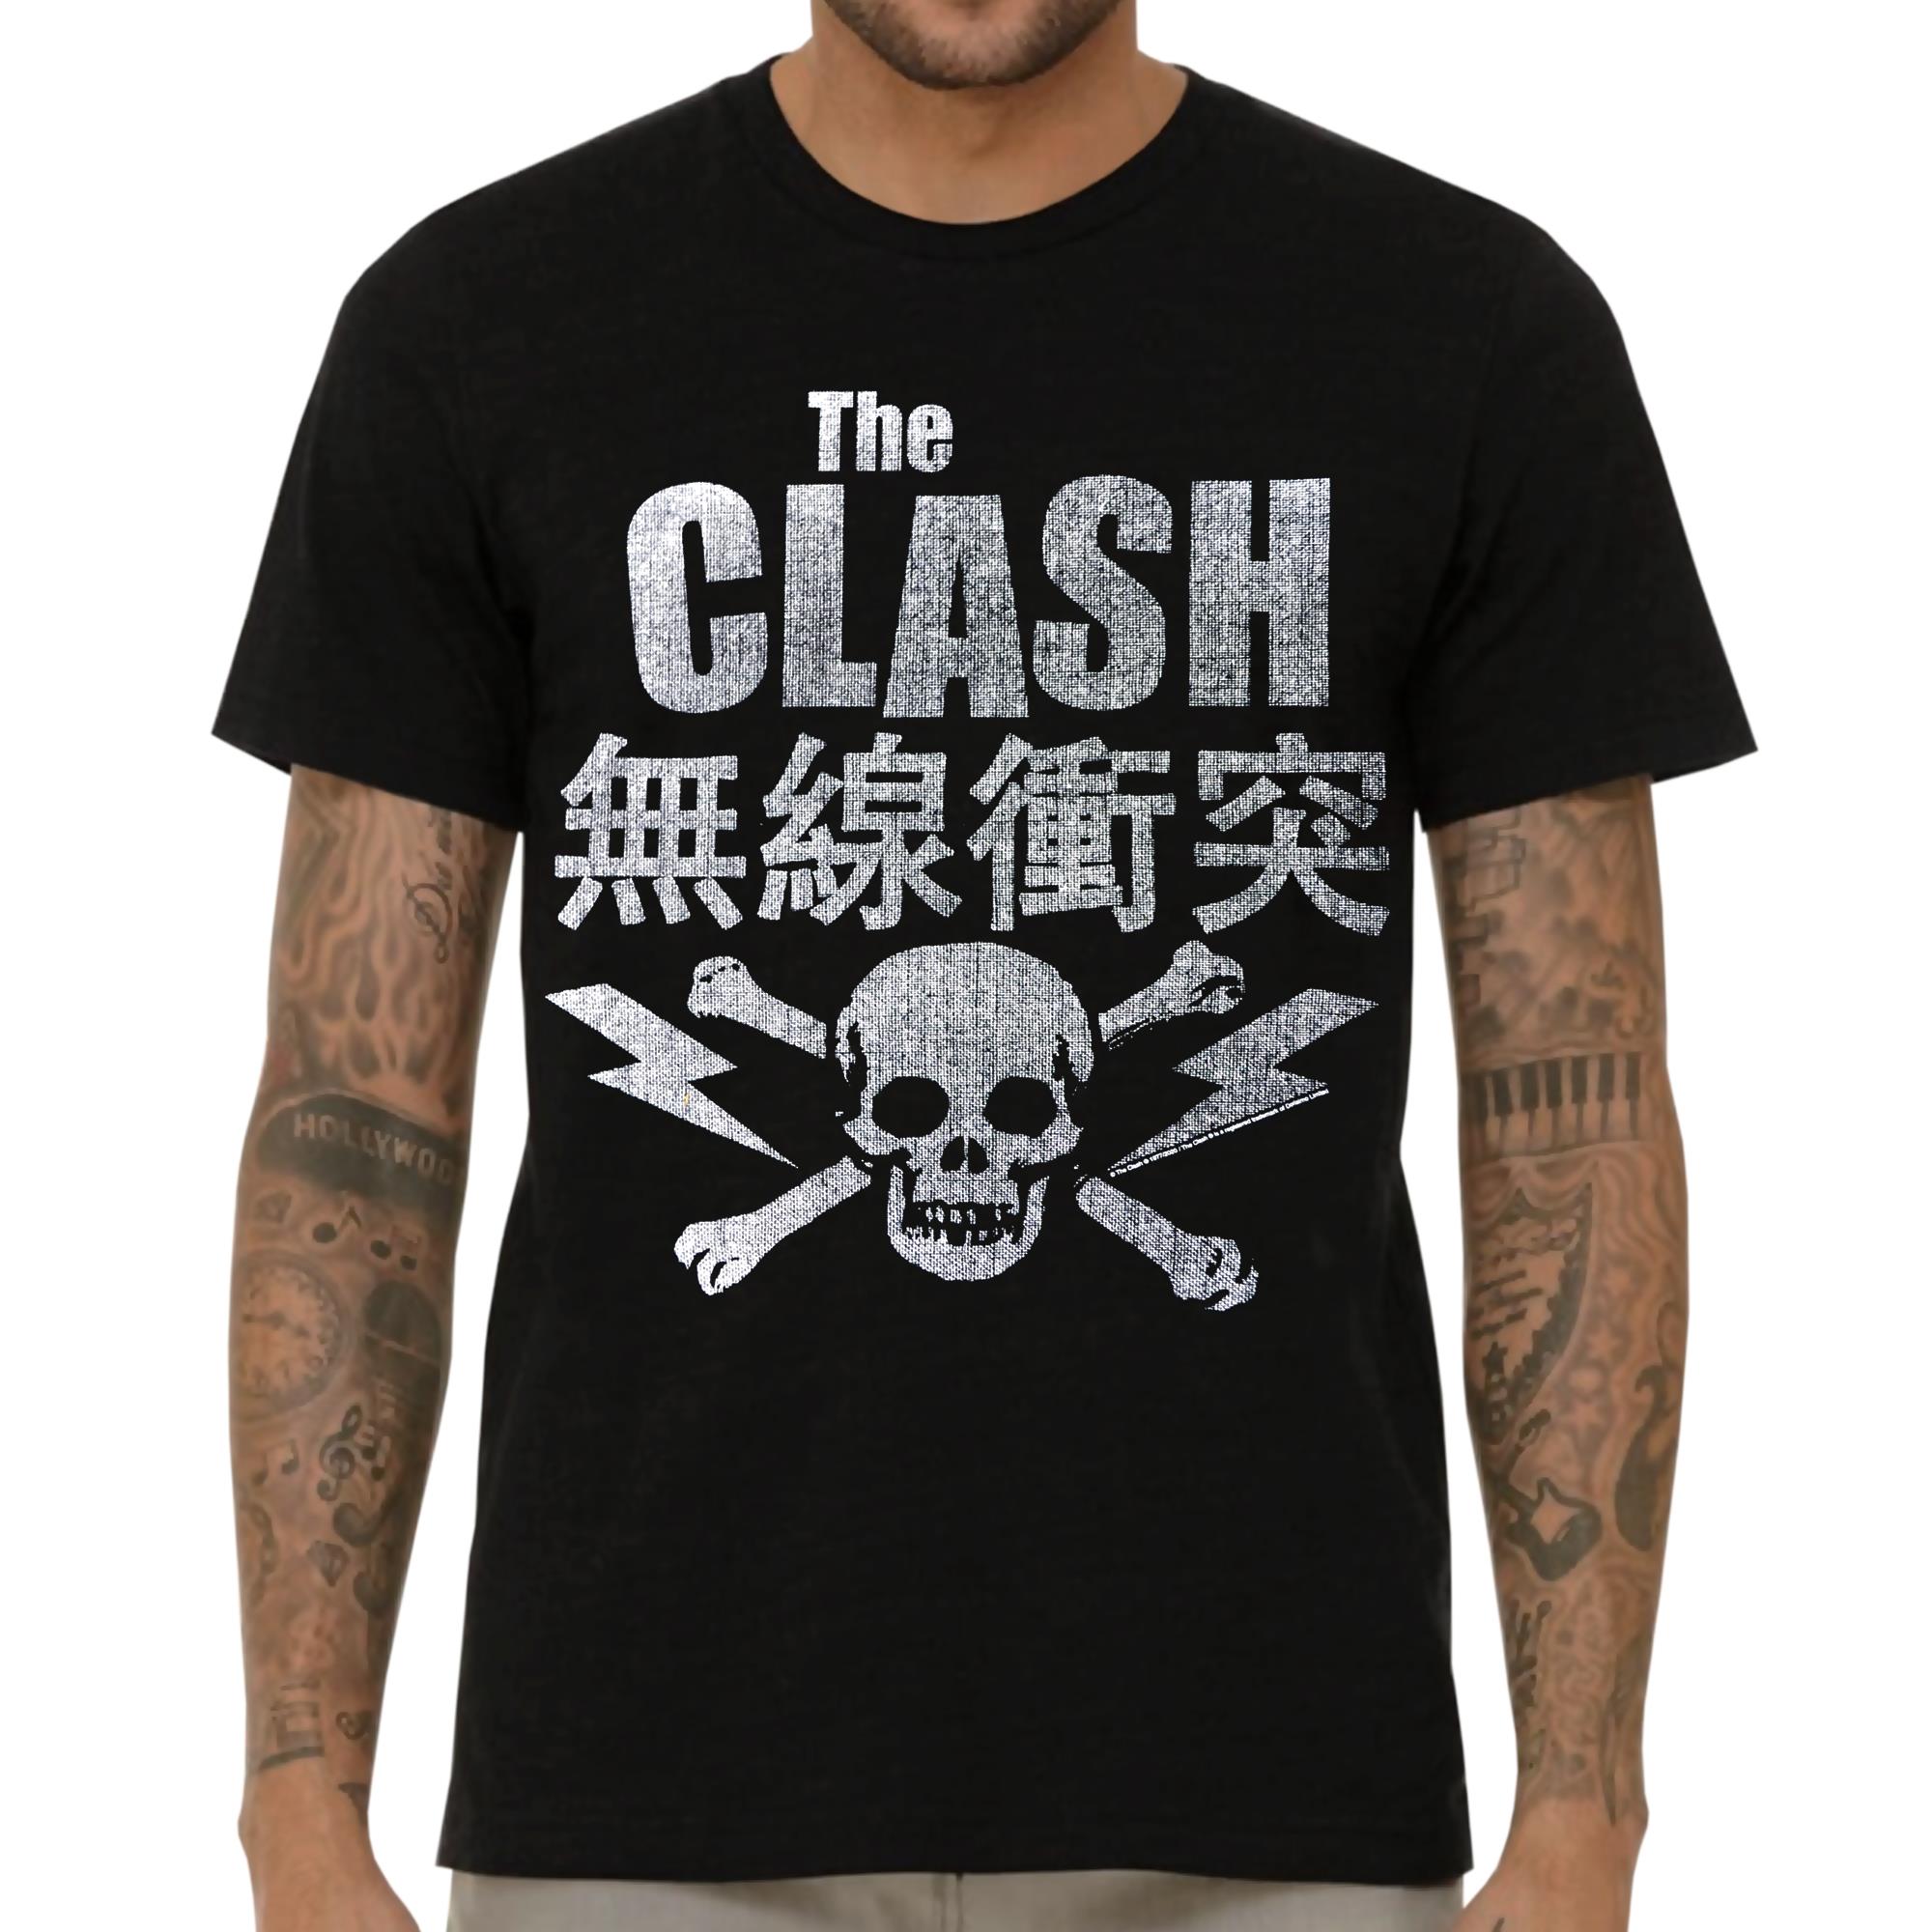 Skull & Crossbones T-Shirt